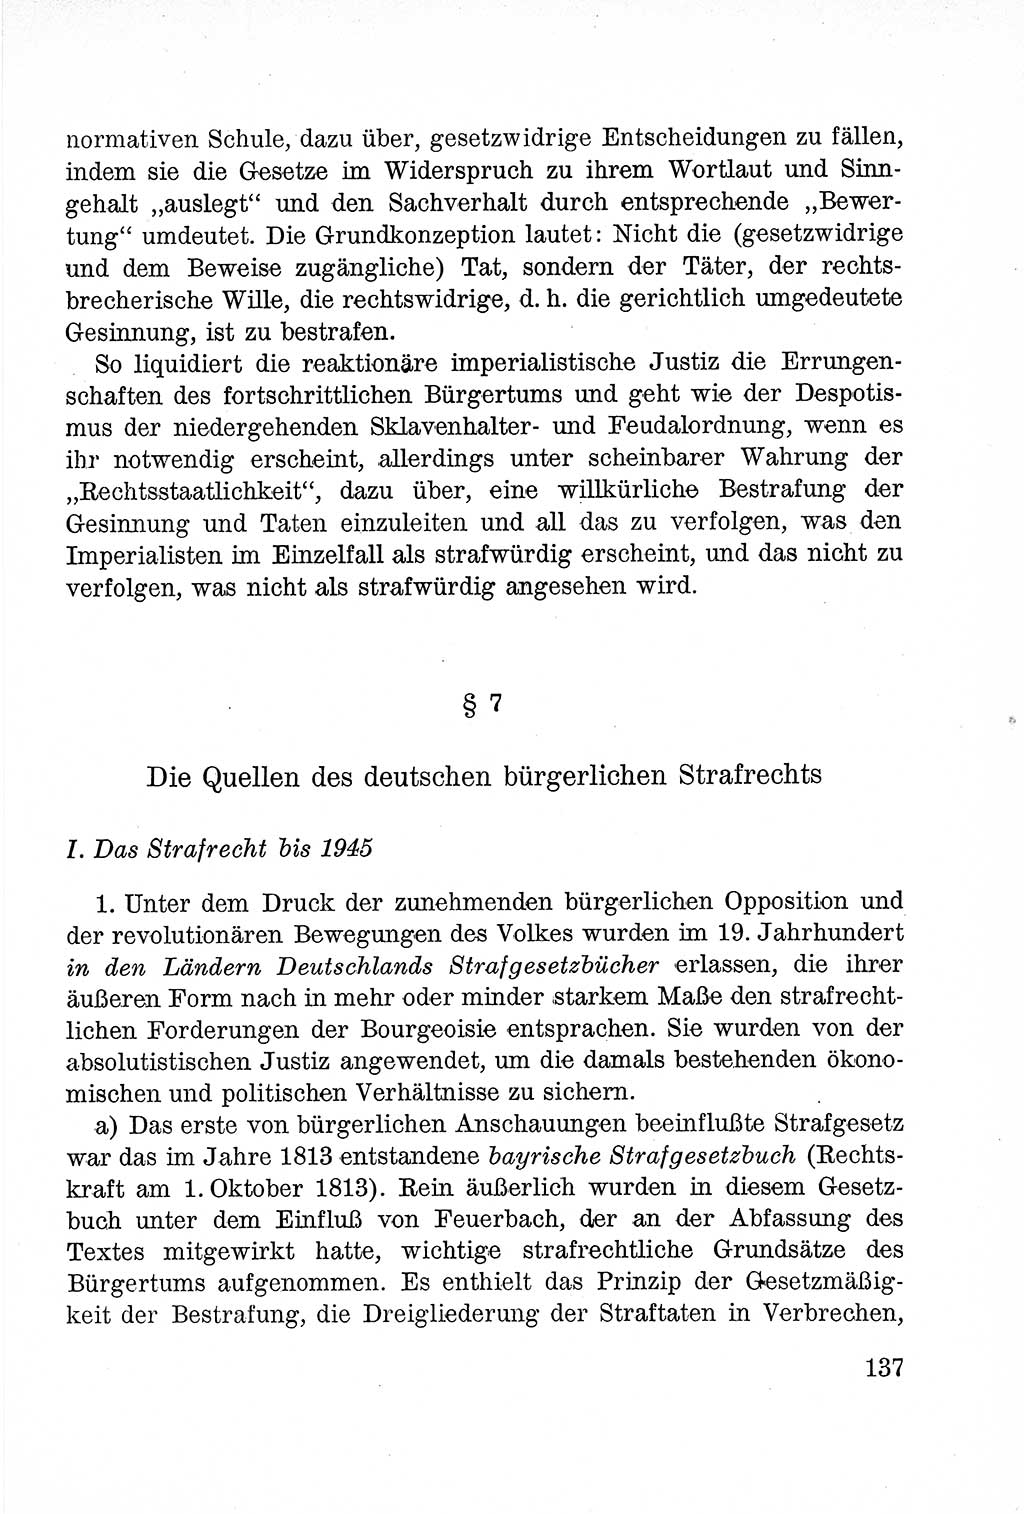 Lehrbuch des Strafrechts der Deutschen Demokratischen Republik (DDR), Allgemeiner Teil 1957, Seite 137 (Lb. Strafr. DDR AT 1957, S. 137)